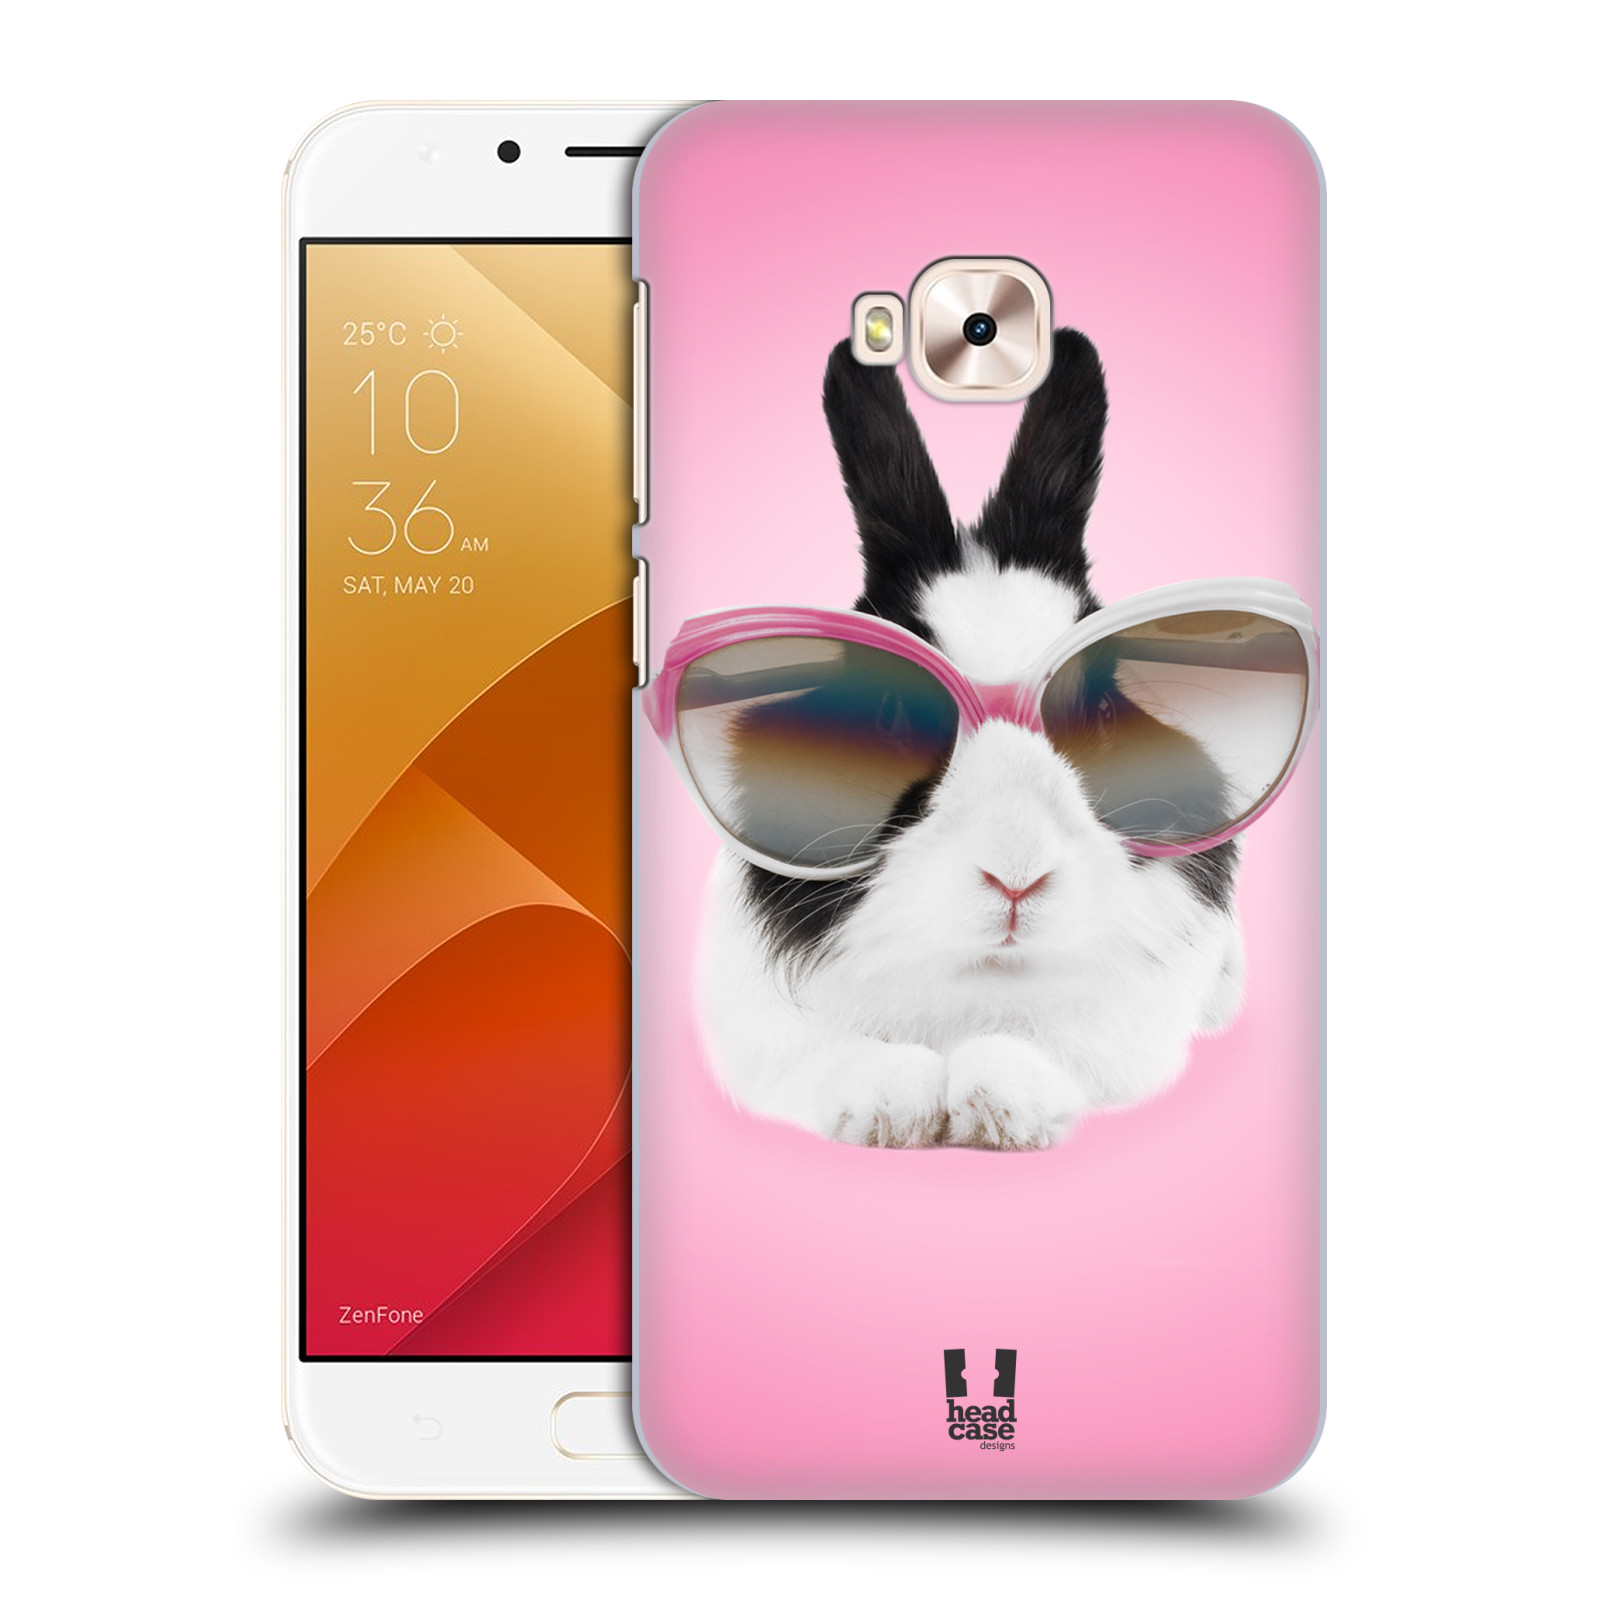 HEAD CASE plastový obal na mobil Asus Zenfone 4 Selfie Pro ZD552KL vzor Legrační zvířátka roztomilý králíček s brýlemi růžová